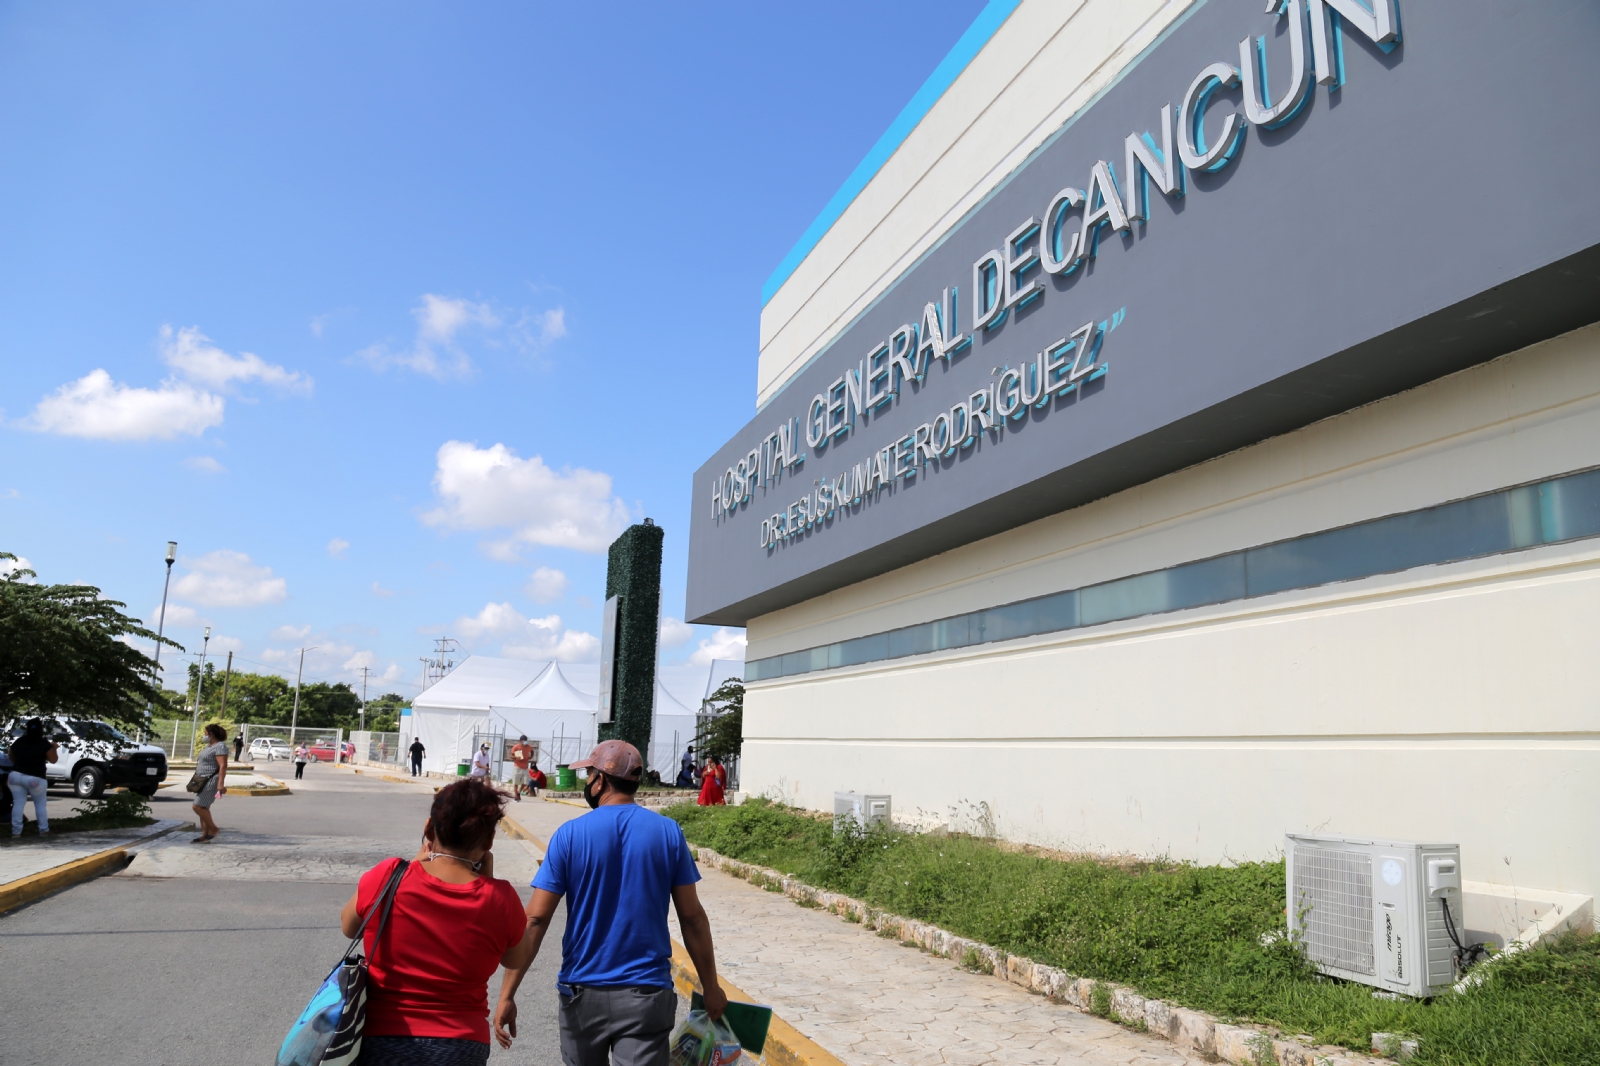 Por supuesta negligencia, hombre muere en el Hospital General de Cancún